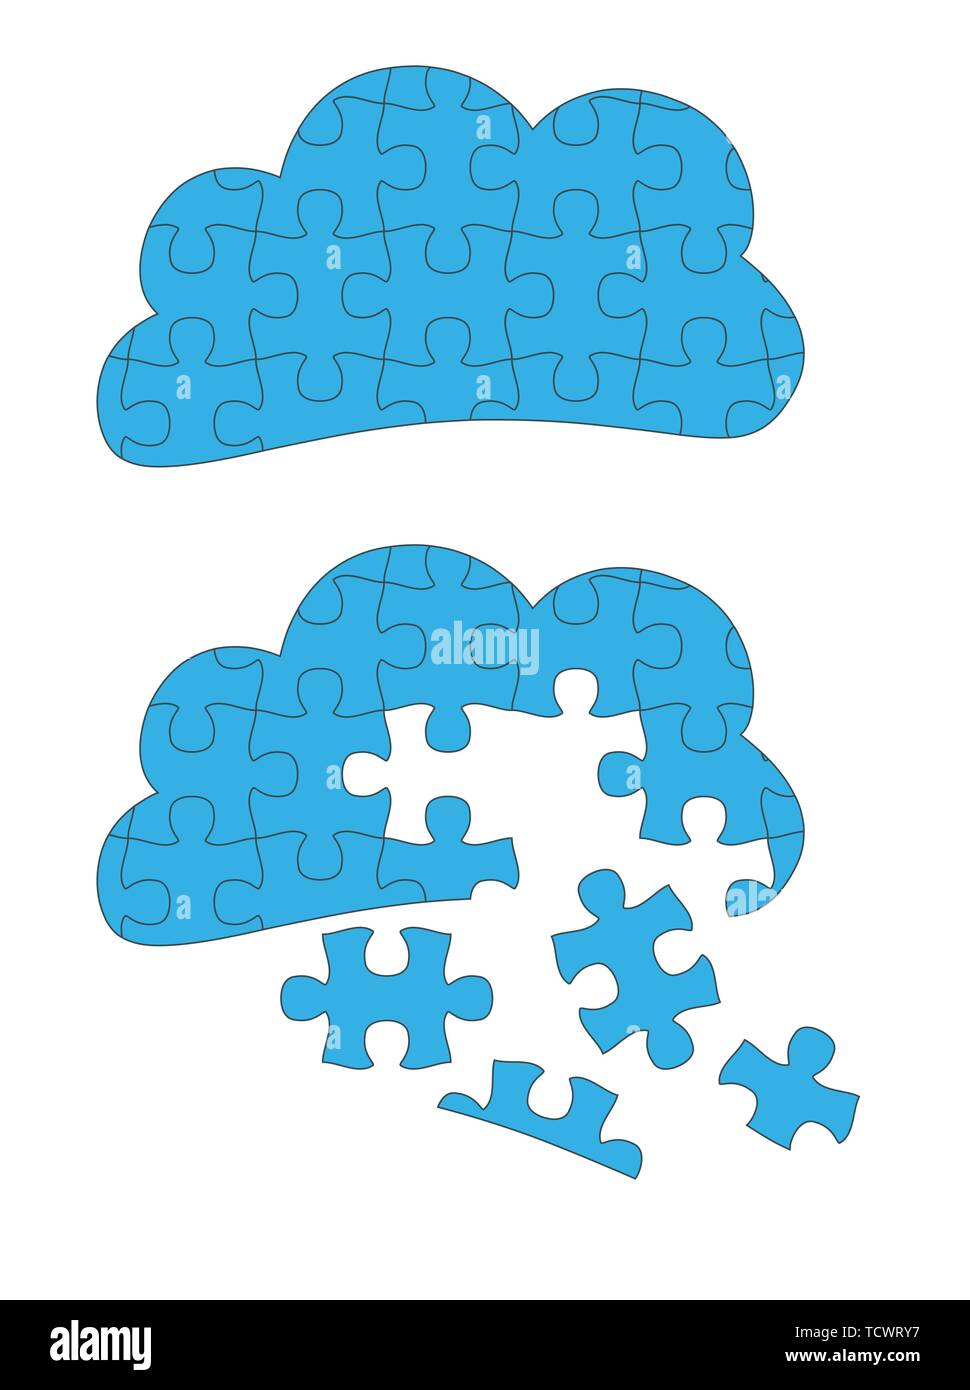 Cloud Computing Jigsaw Konzept mit großen Stücken - puzzleteile sind getrennt und bewegliche Stock Vektor